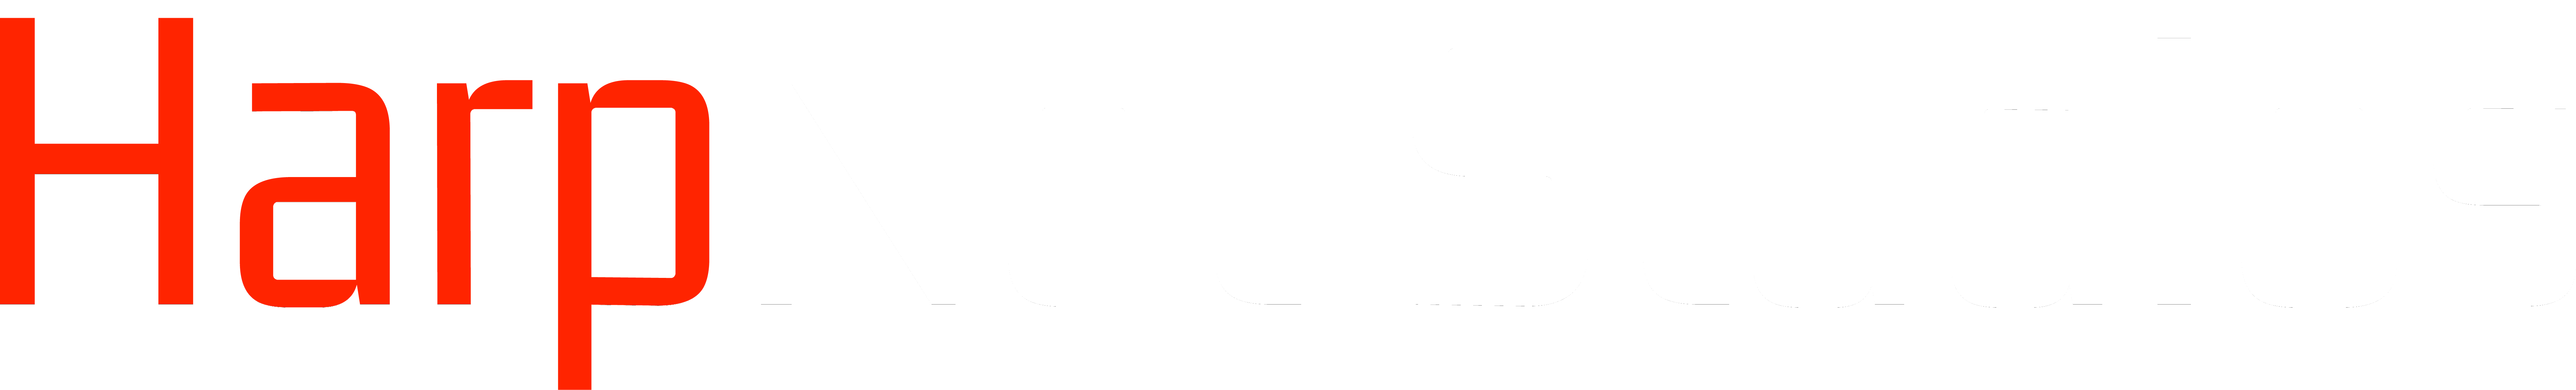 HarpNet Studios Text Logo